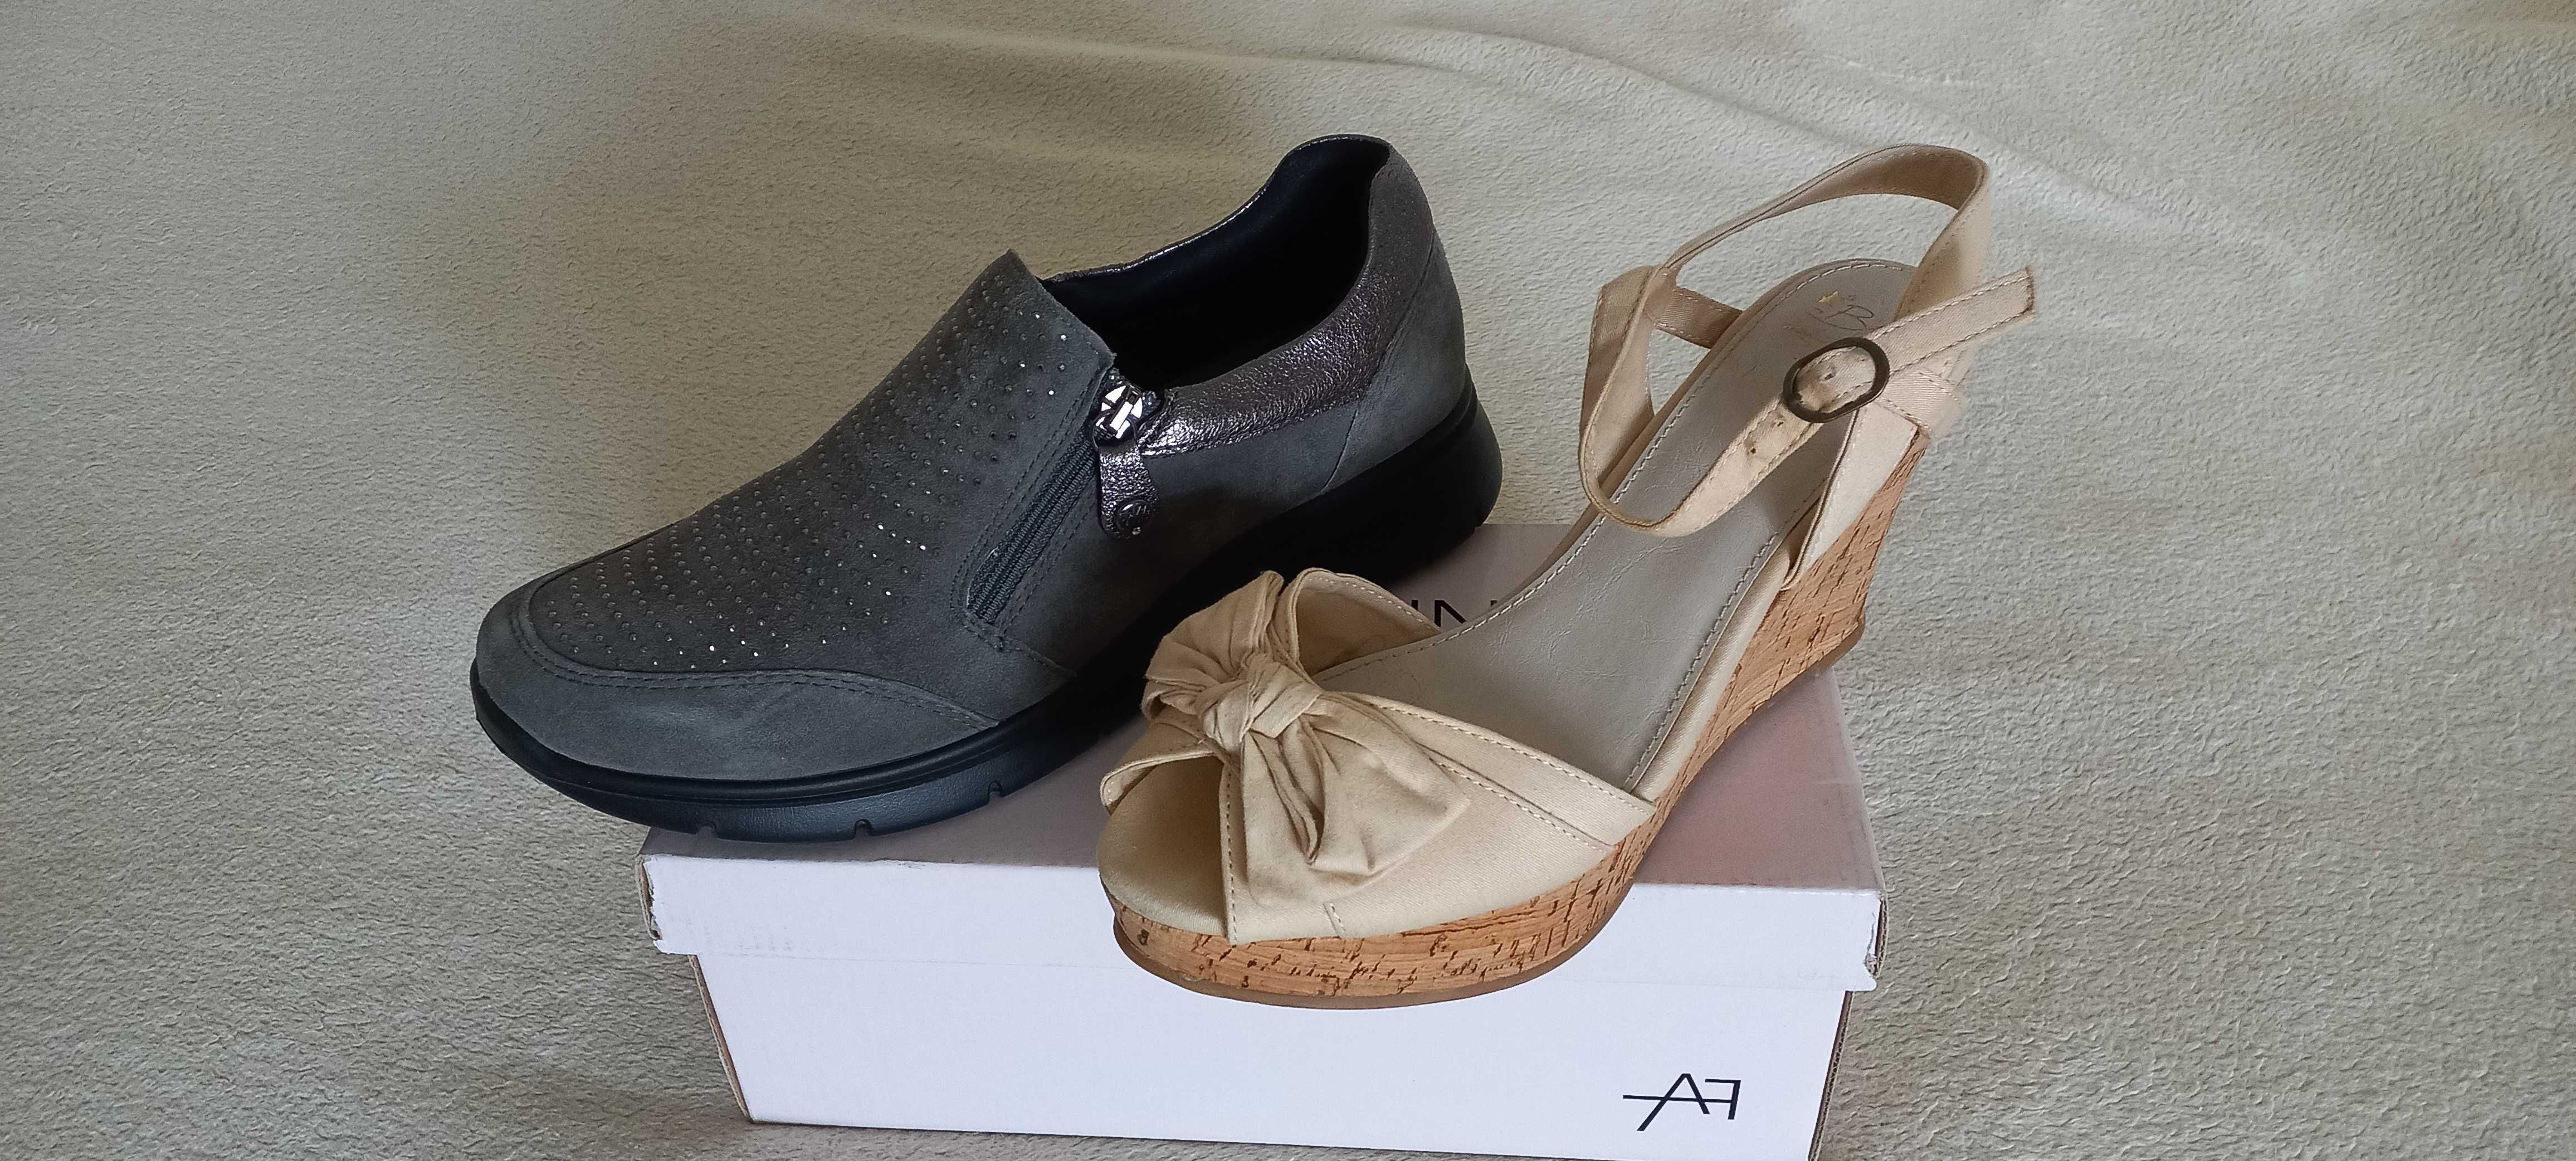 Якісні жіночіі босоніжки  туфлі  взуття Італія